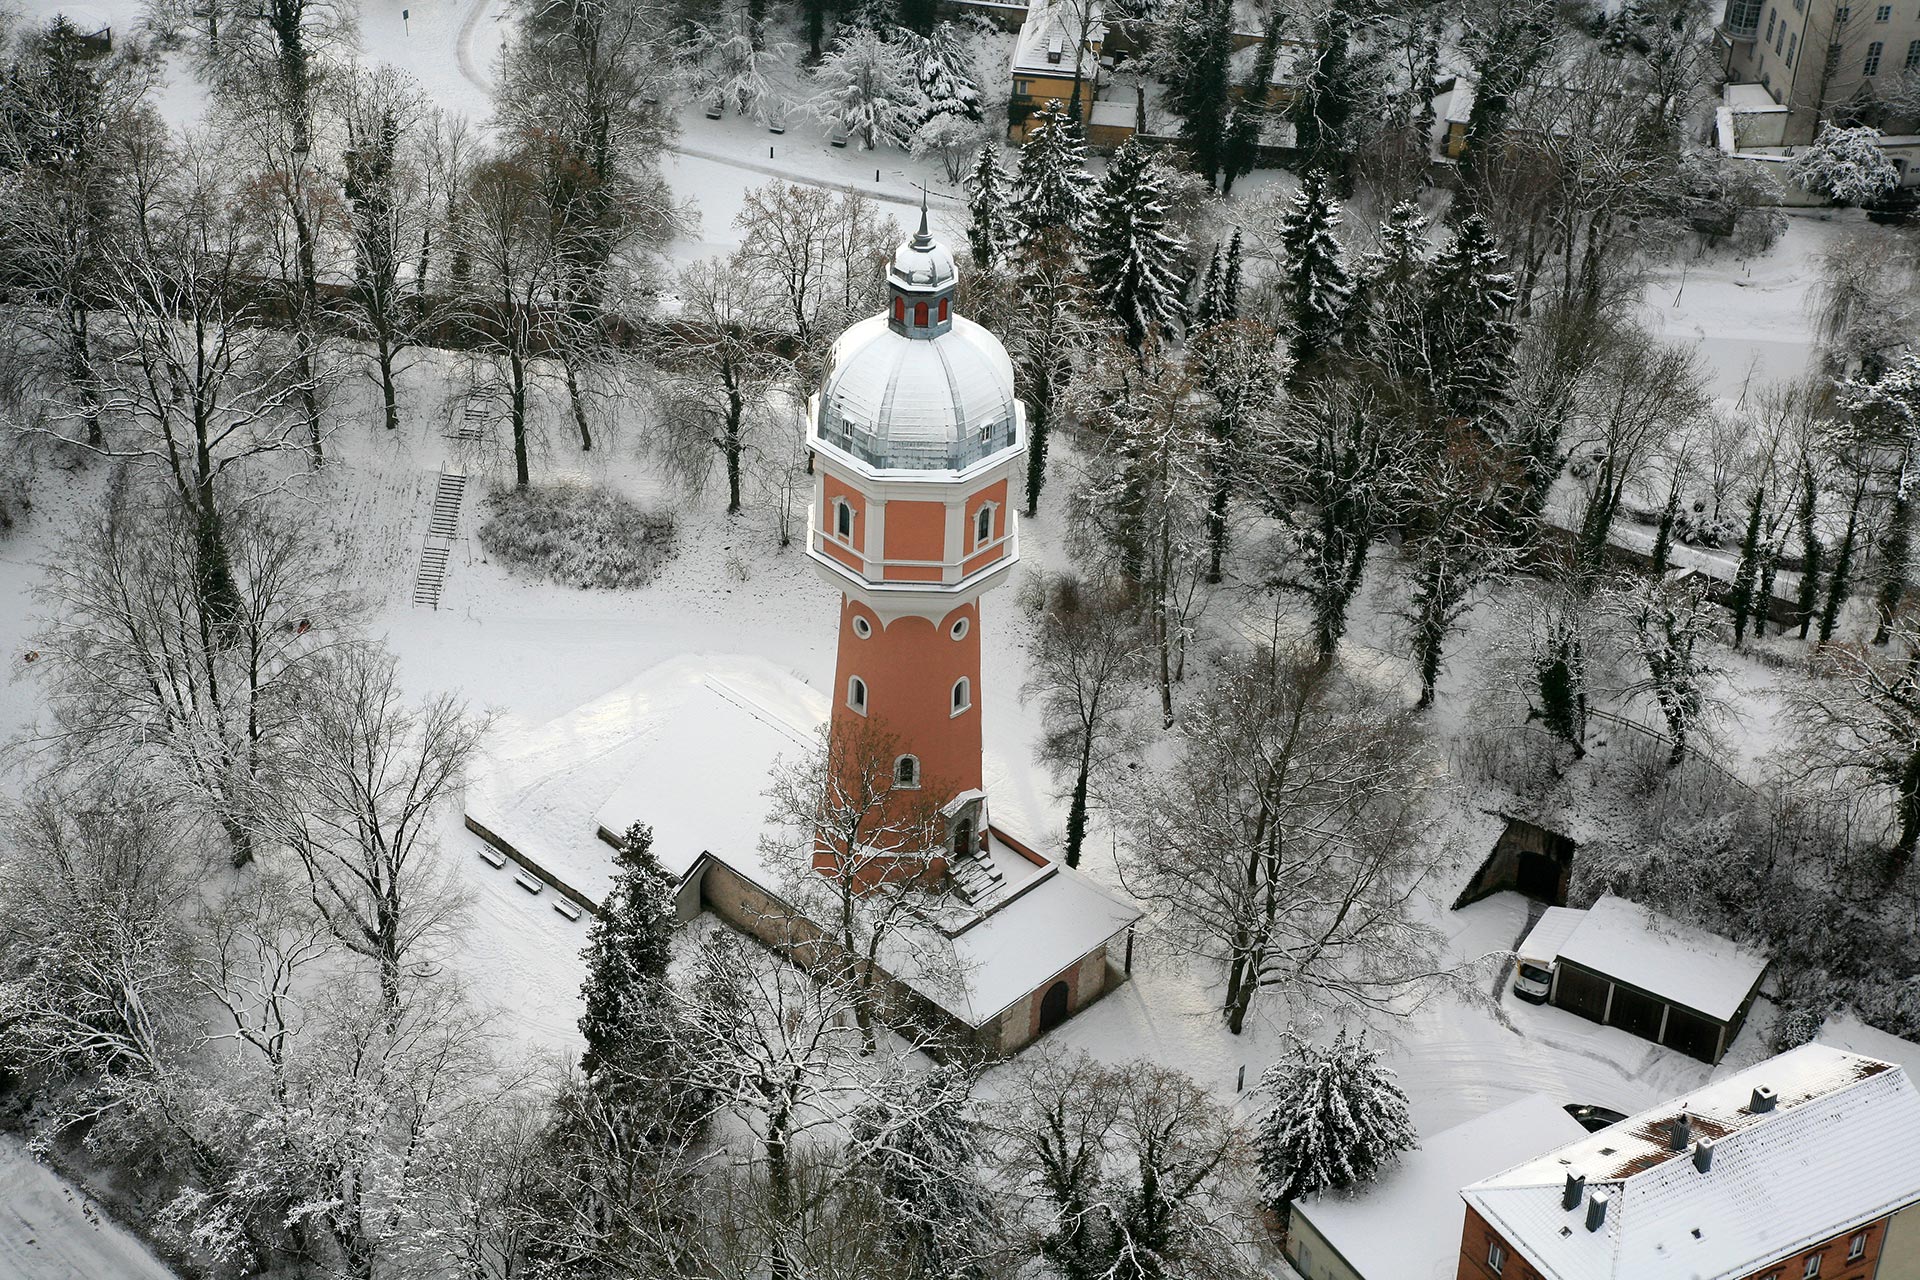 Wasserturm im Kollmannspark mit Schnee